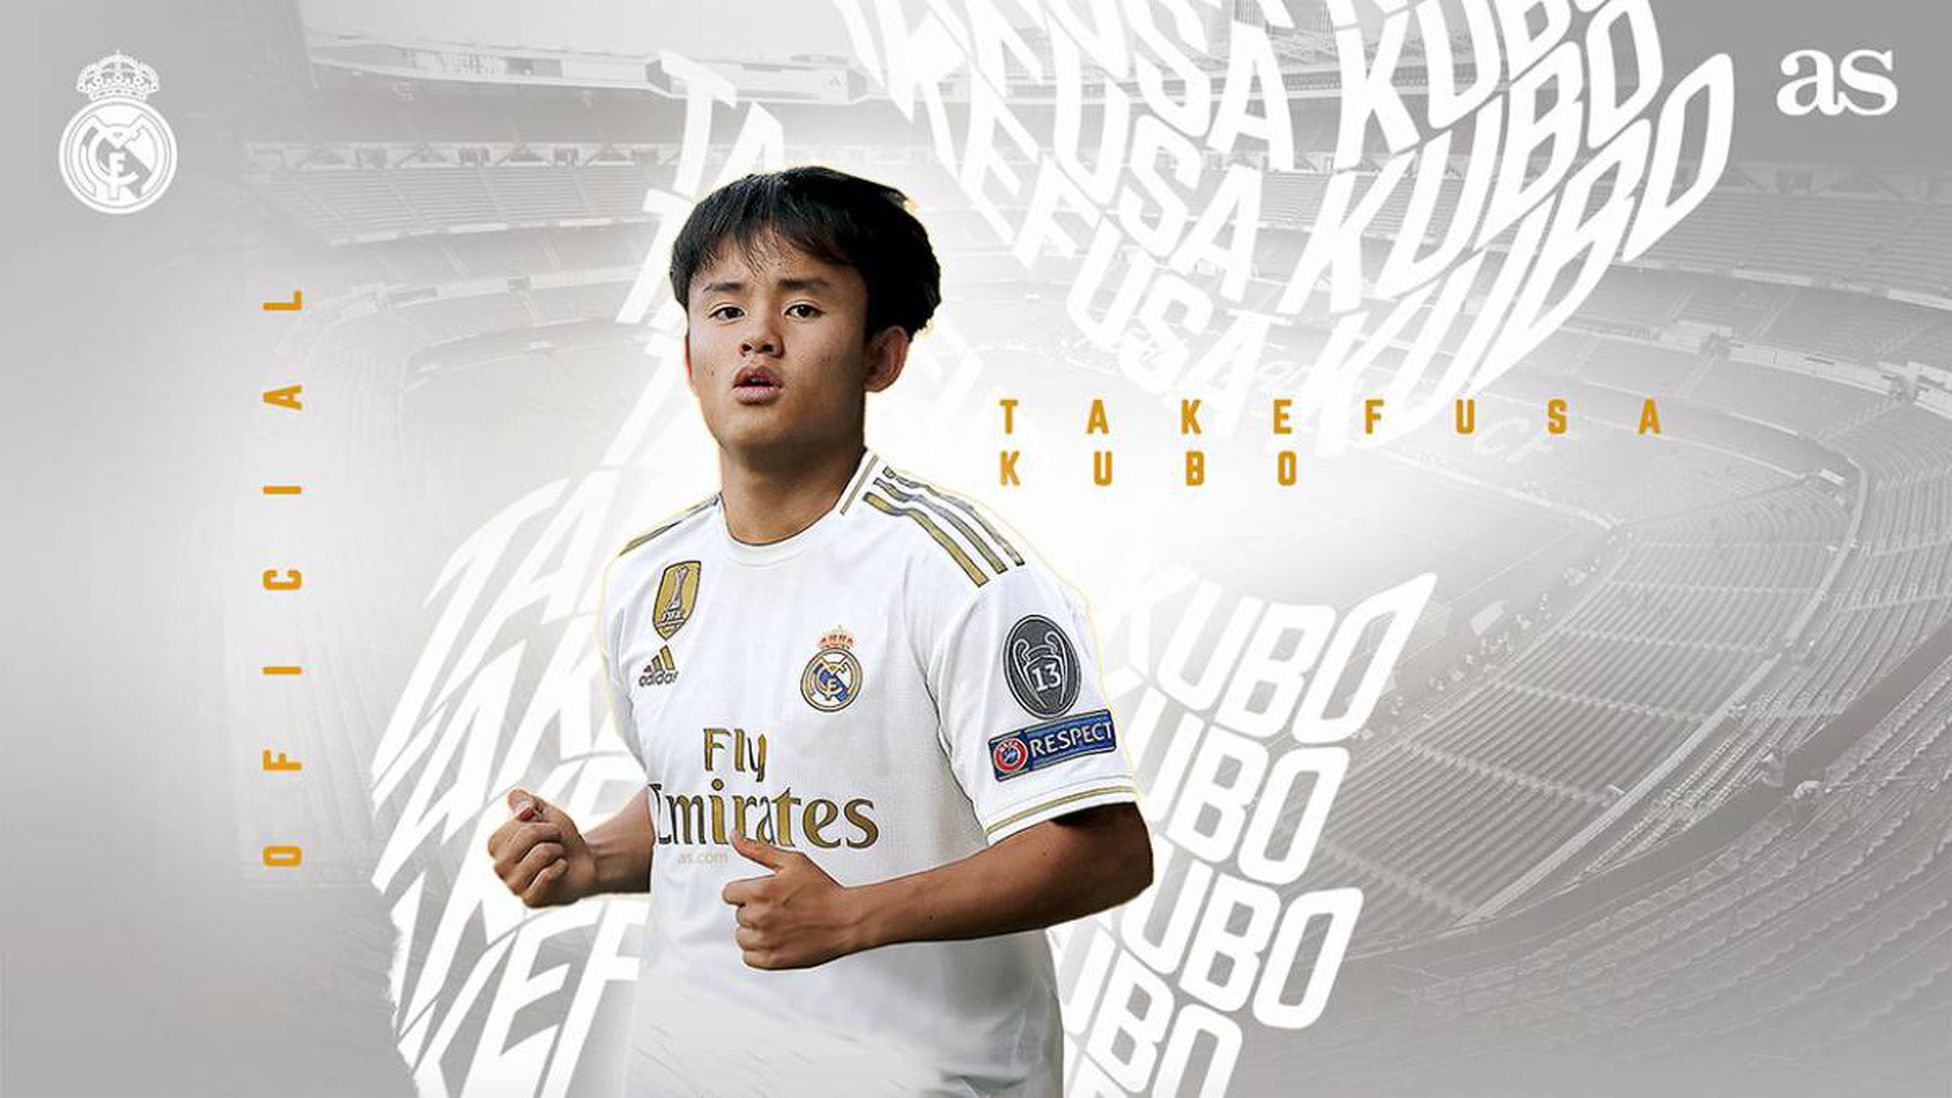 Takefusa Kubo, japonés y ex del Barça, ficha por el Real Madrid - AS.com